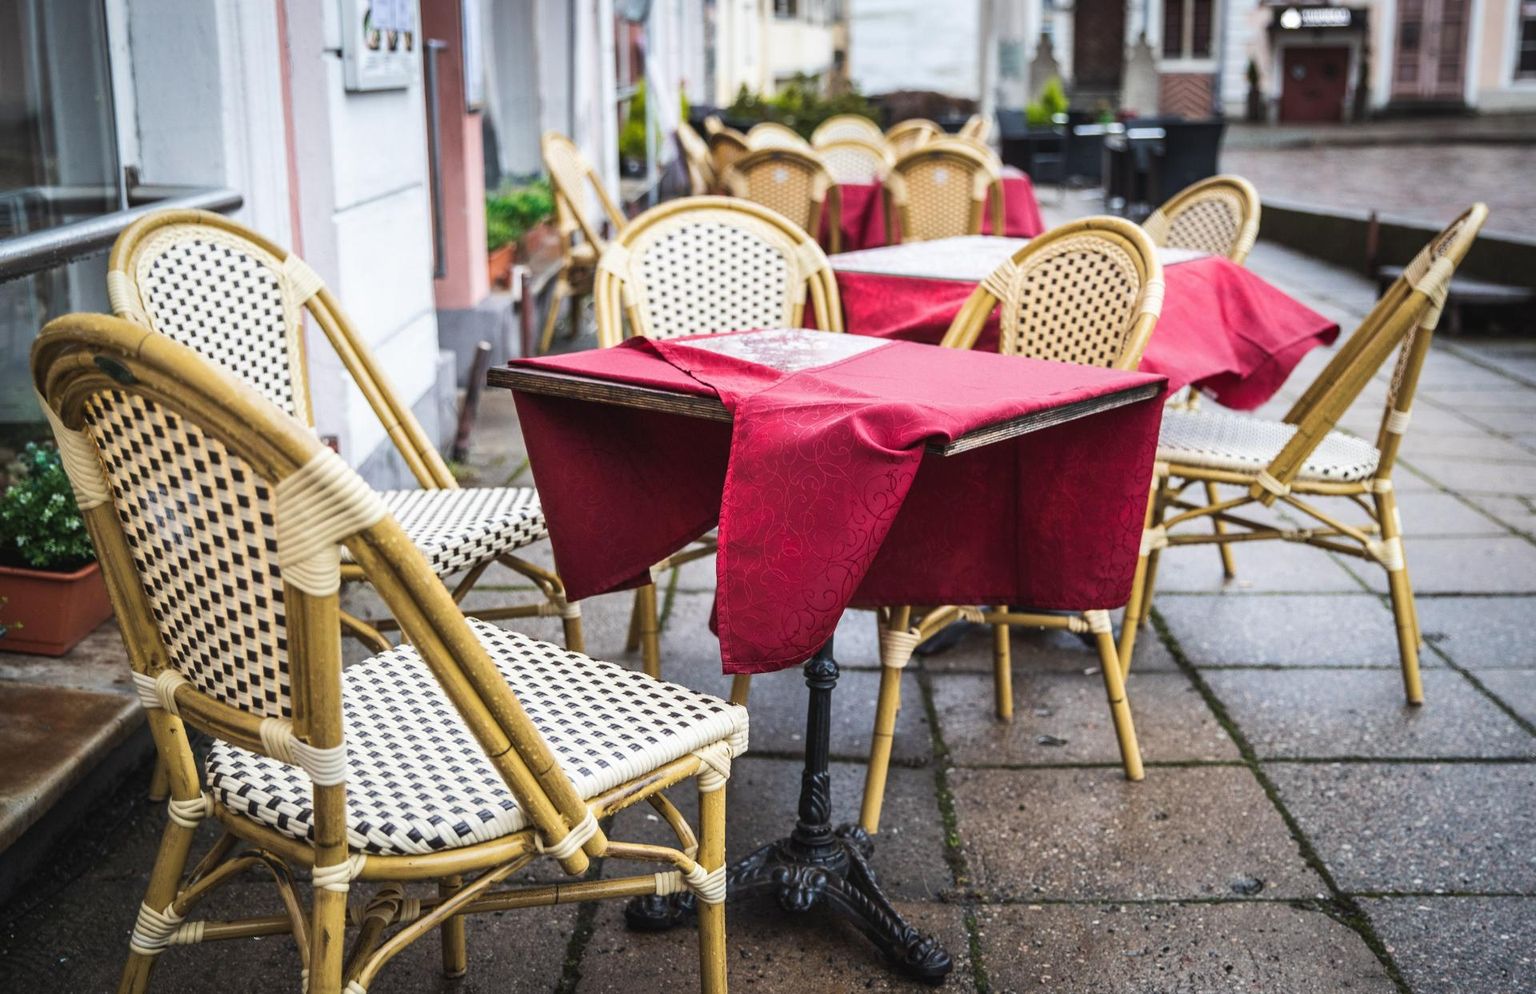 Tänasest ei pea väliterrassil vihma käes sööma, vaid võib kuni kuuekesi restoranis või kohvikus sees einestada. 